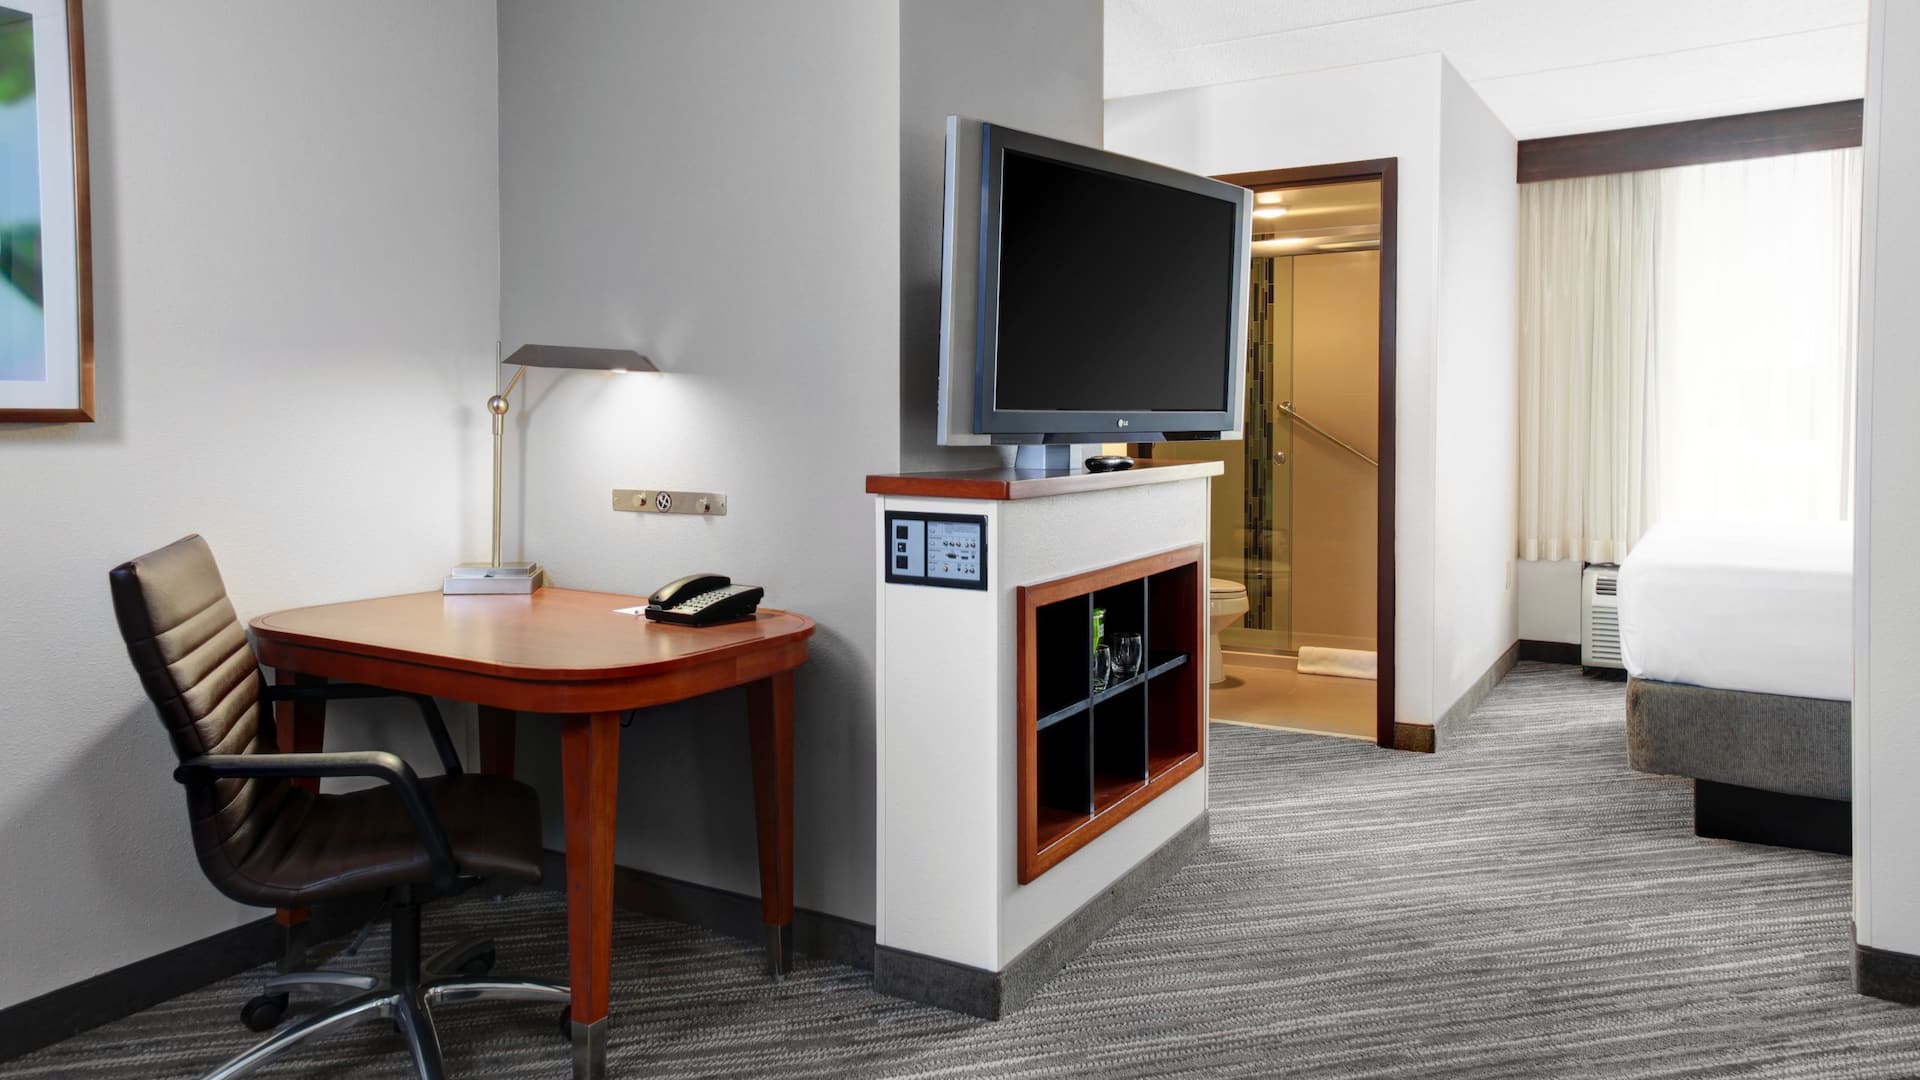 Livonia hotel guestroom tv and desk at Hyatt Place Detroit Livonia